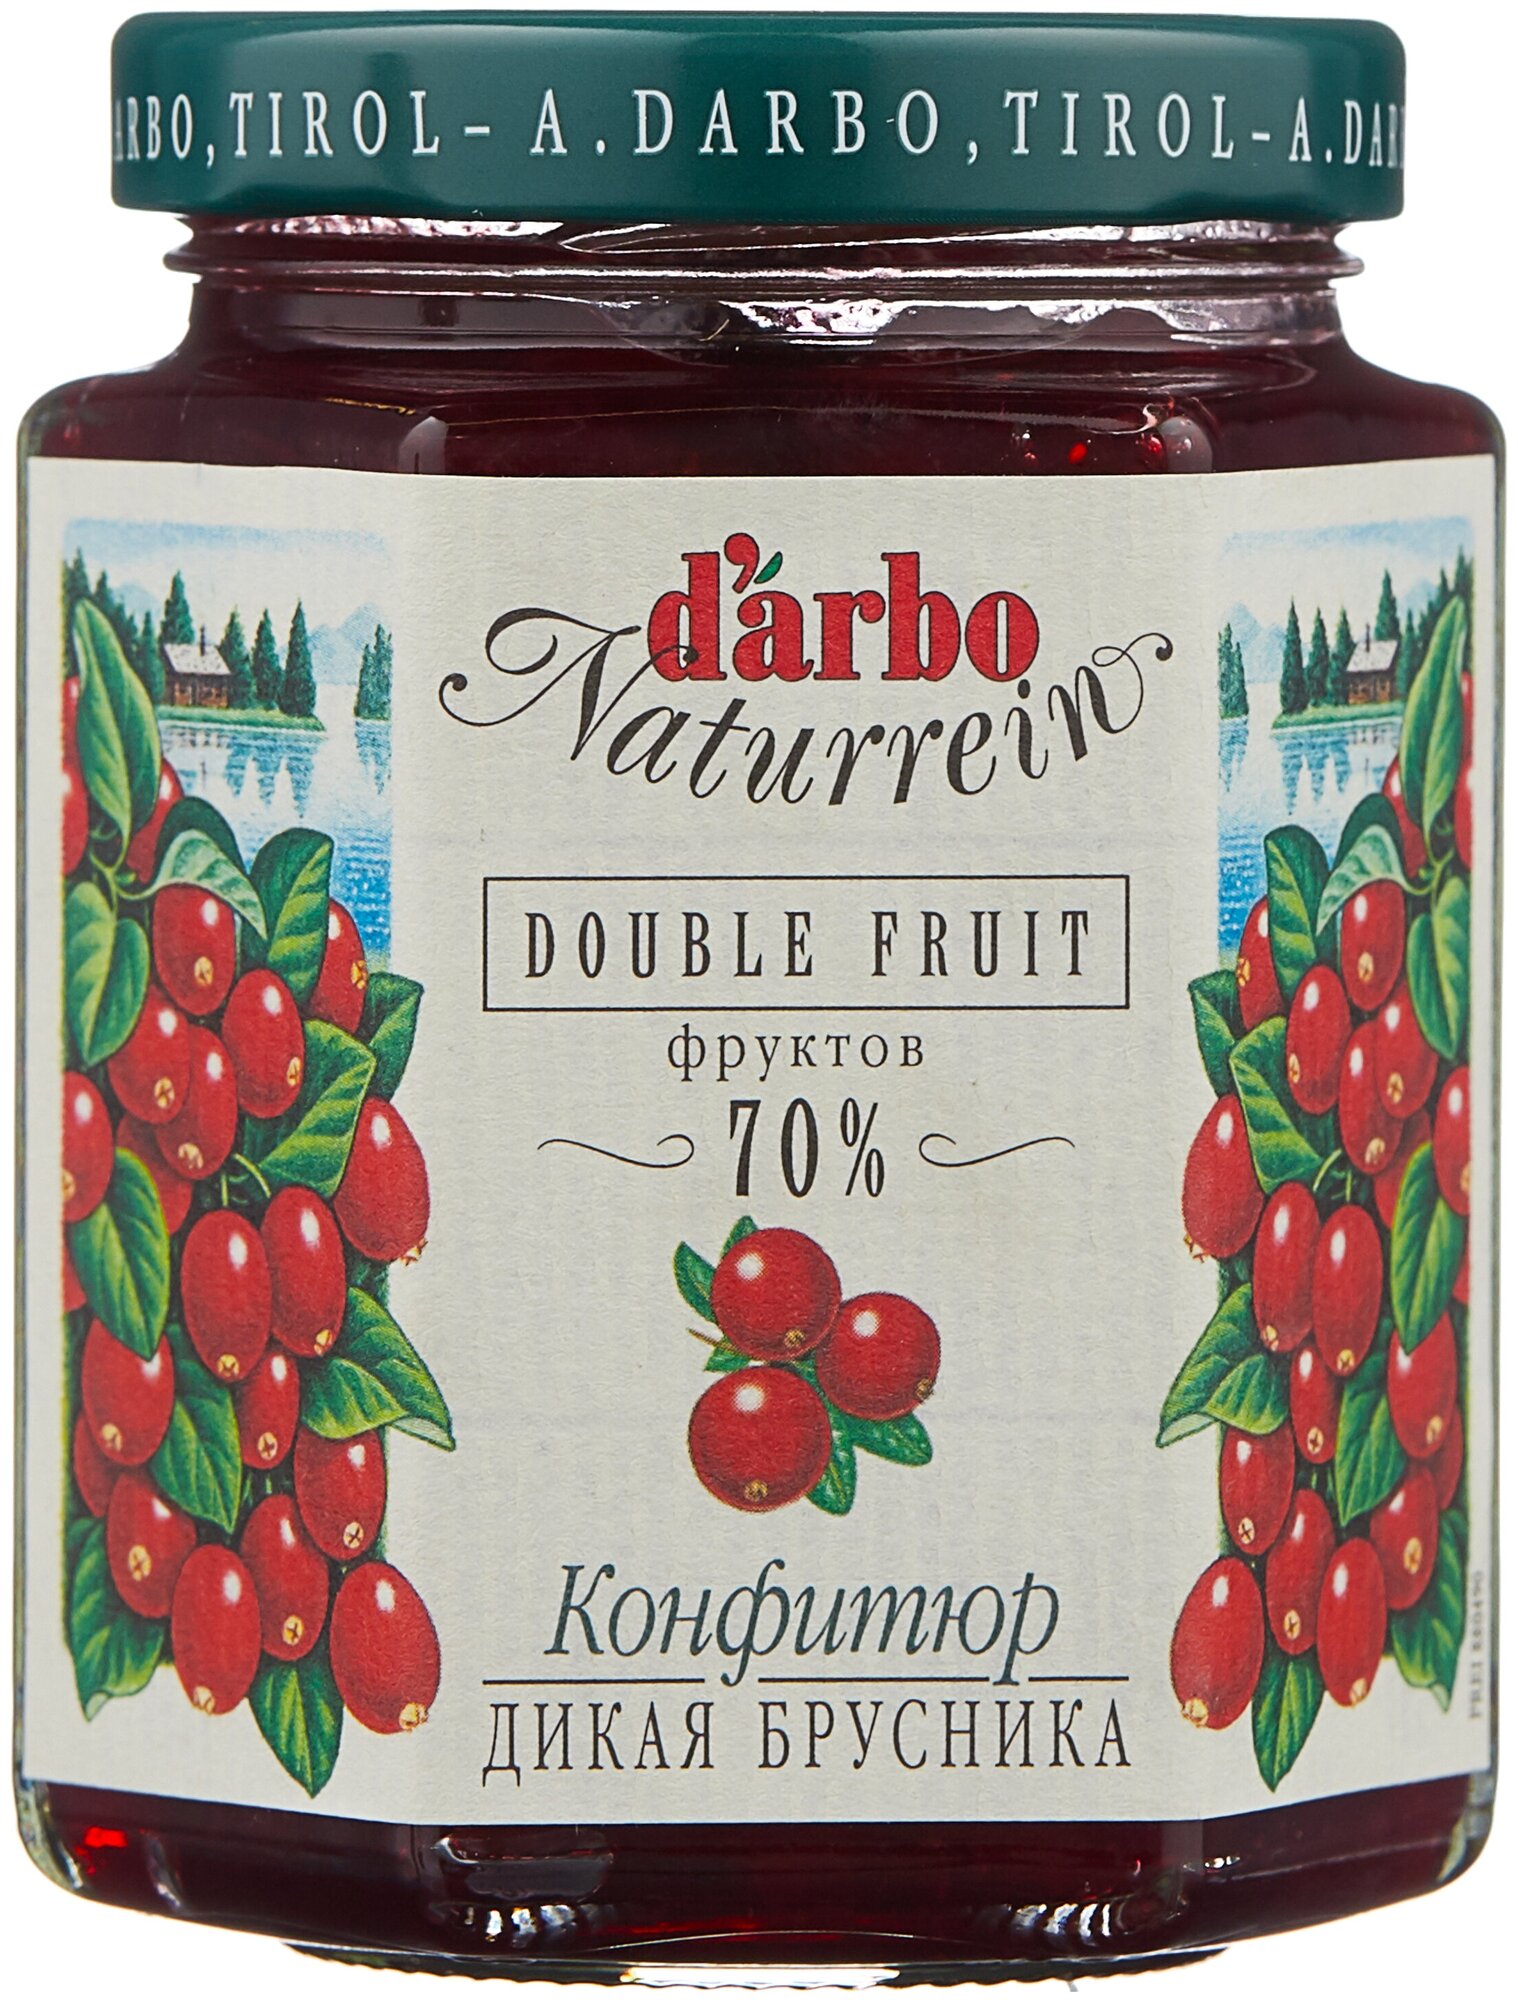 Конфитюр d'arbo Naturrein Double Fruit, брусника, 200 г